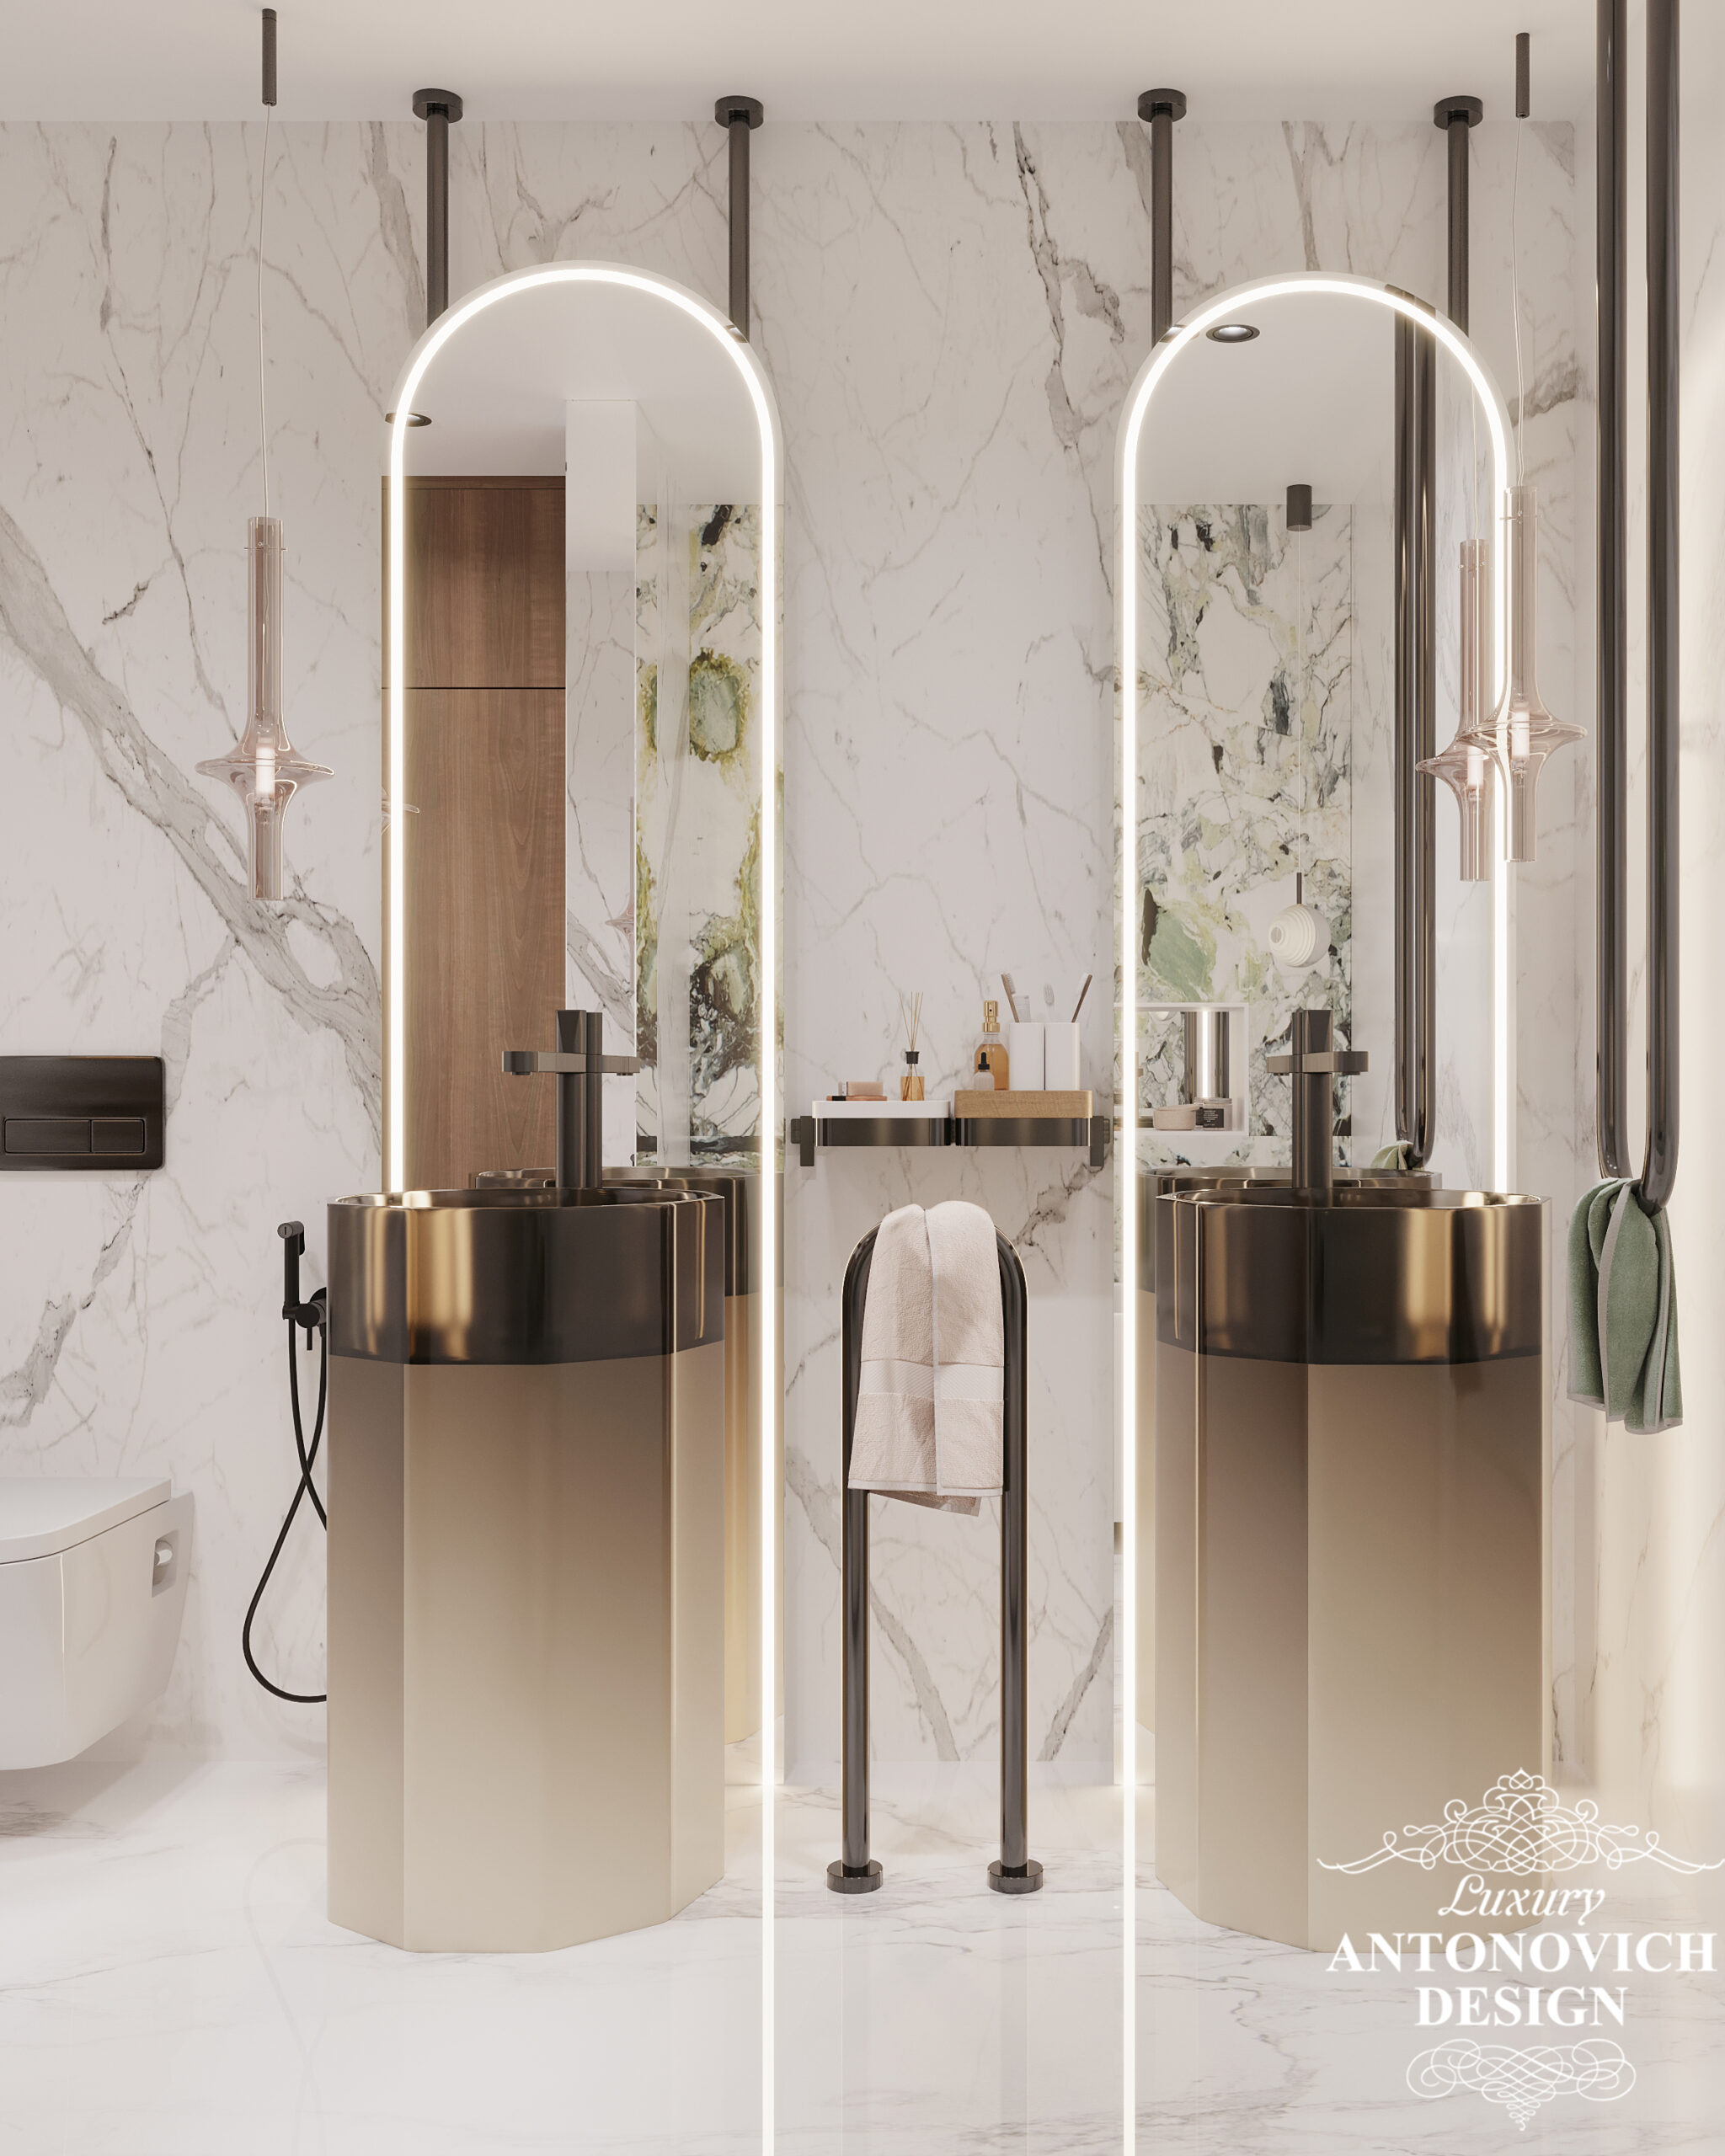 тільний дизайн проект ванної з вбудованими підлоговими умивальниками і дзеркалами з яскравим підсвічуванням.